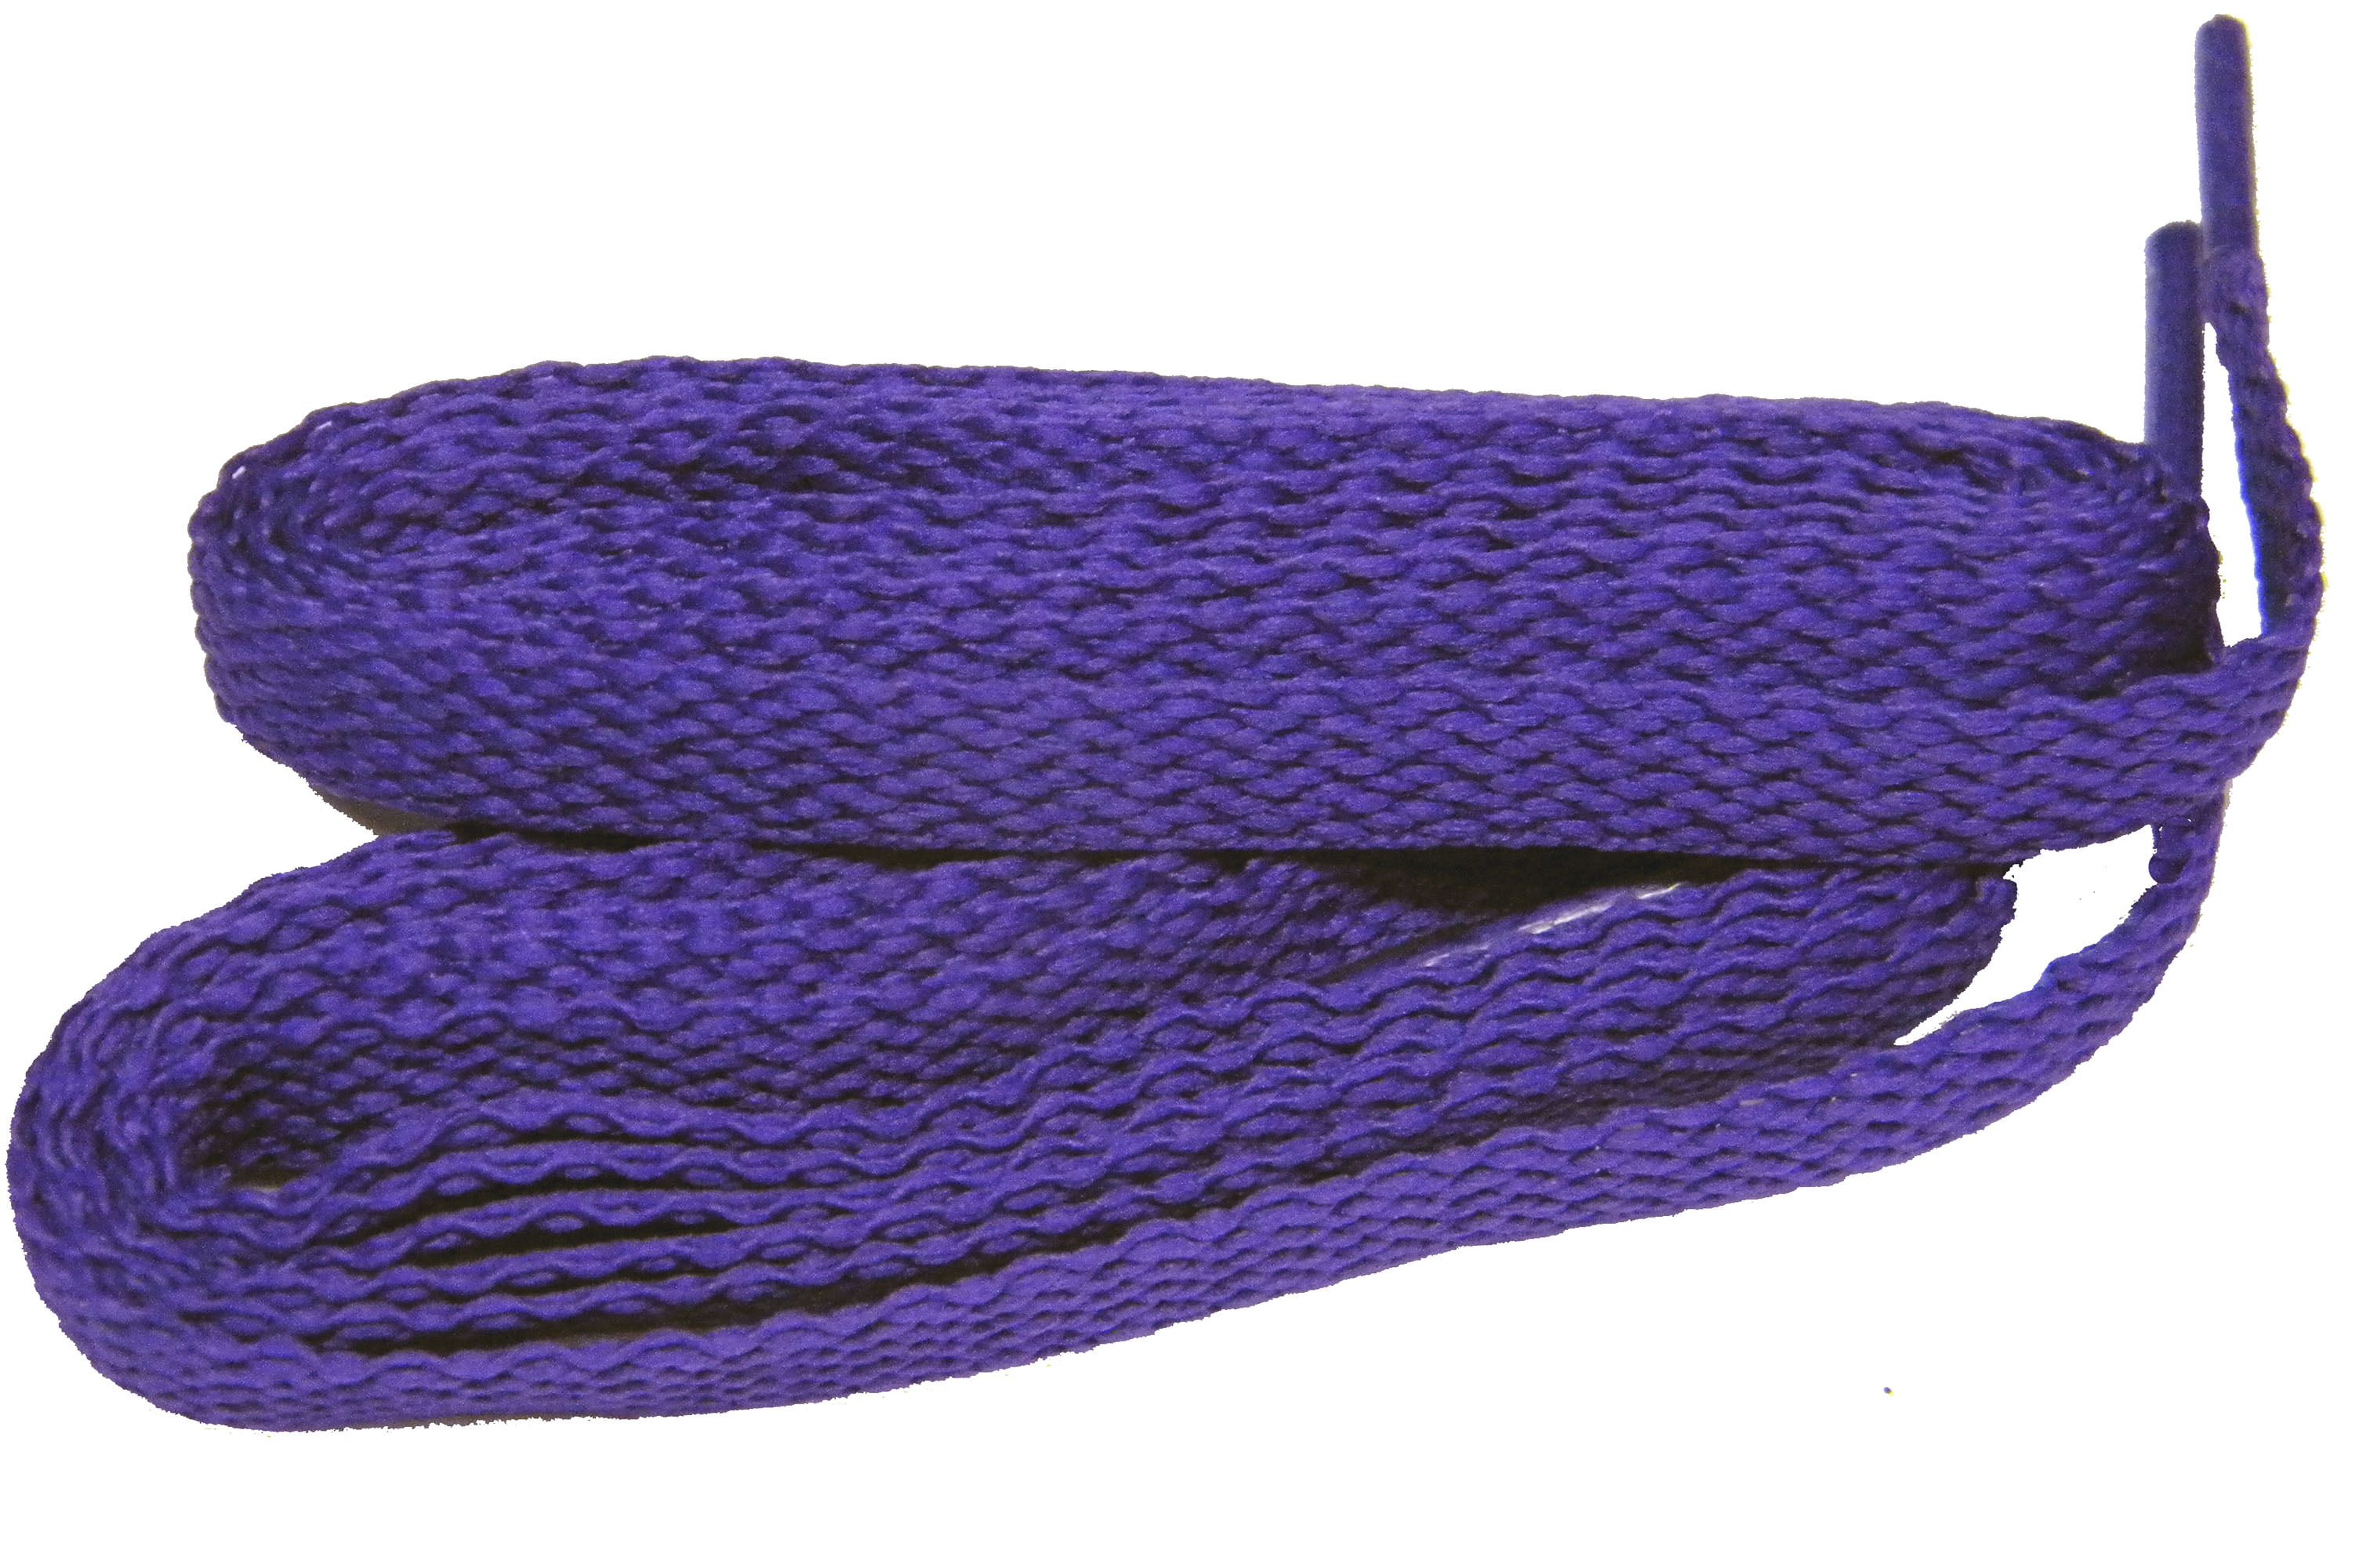 Flat 27,36,45,54,63" Athletic Lavender Shoelace Sneaker Strings 1,2,4,6,12 Pairs 